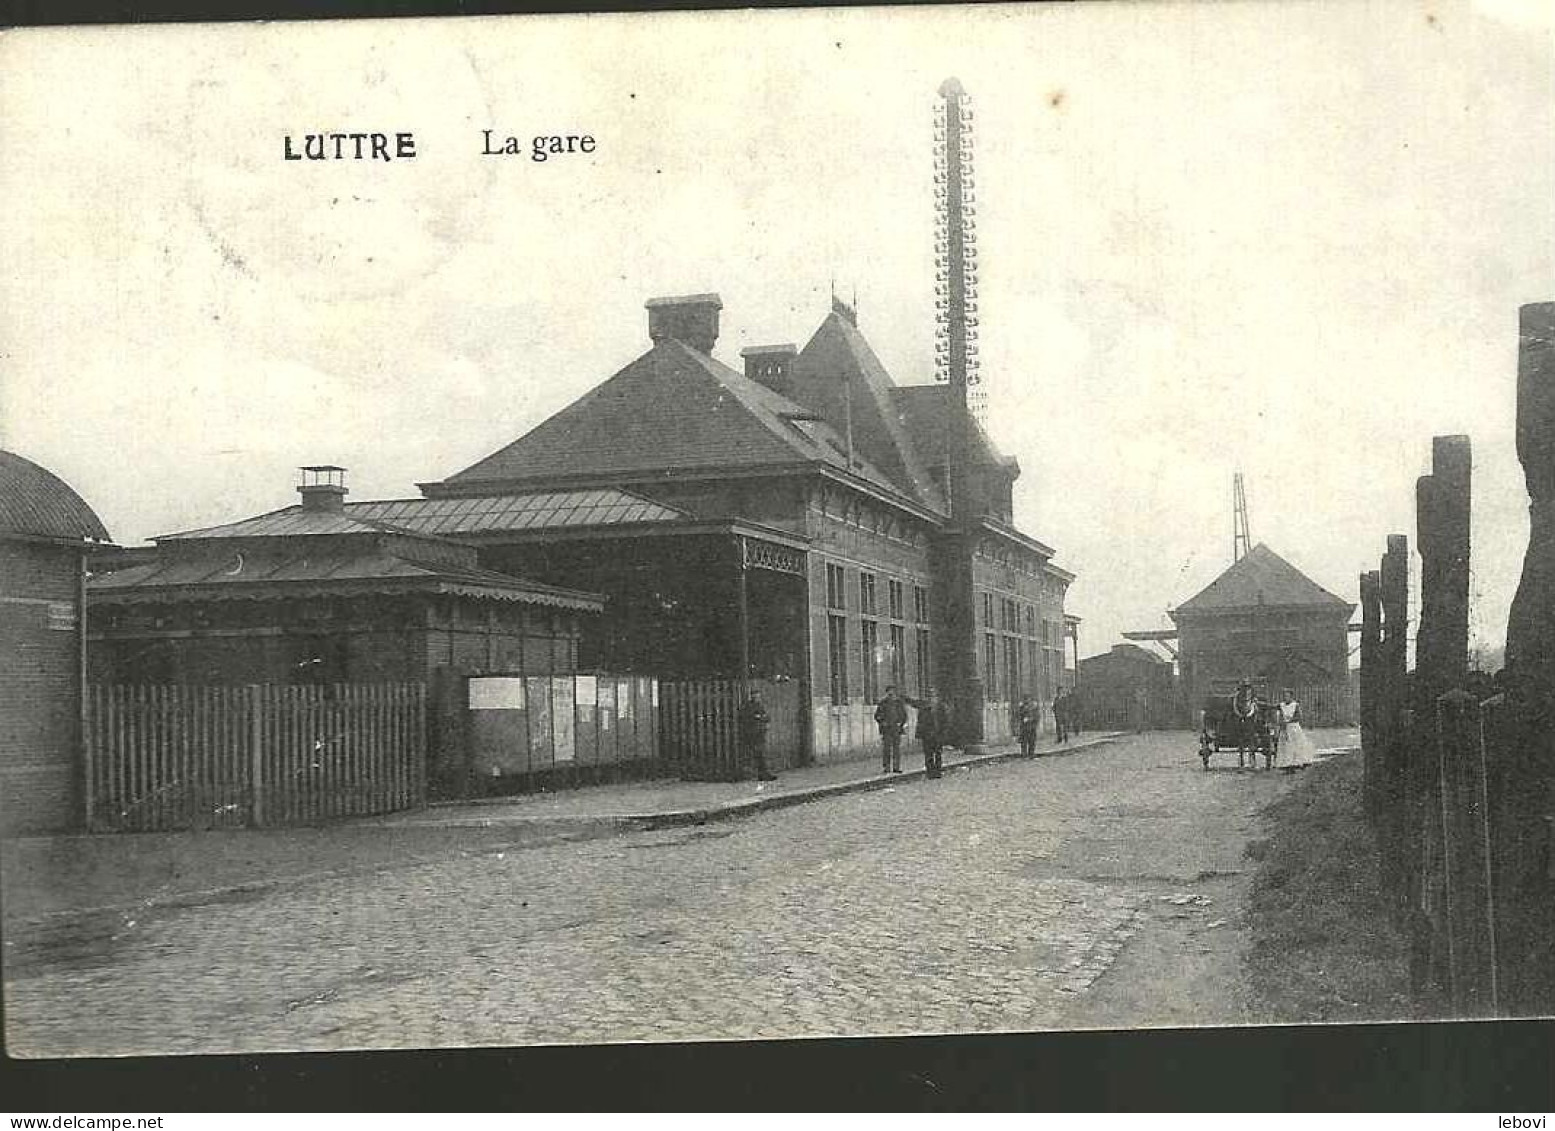 LUTTRE « La Gare » (1913) - Pont-à-Celles